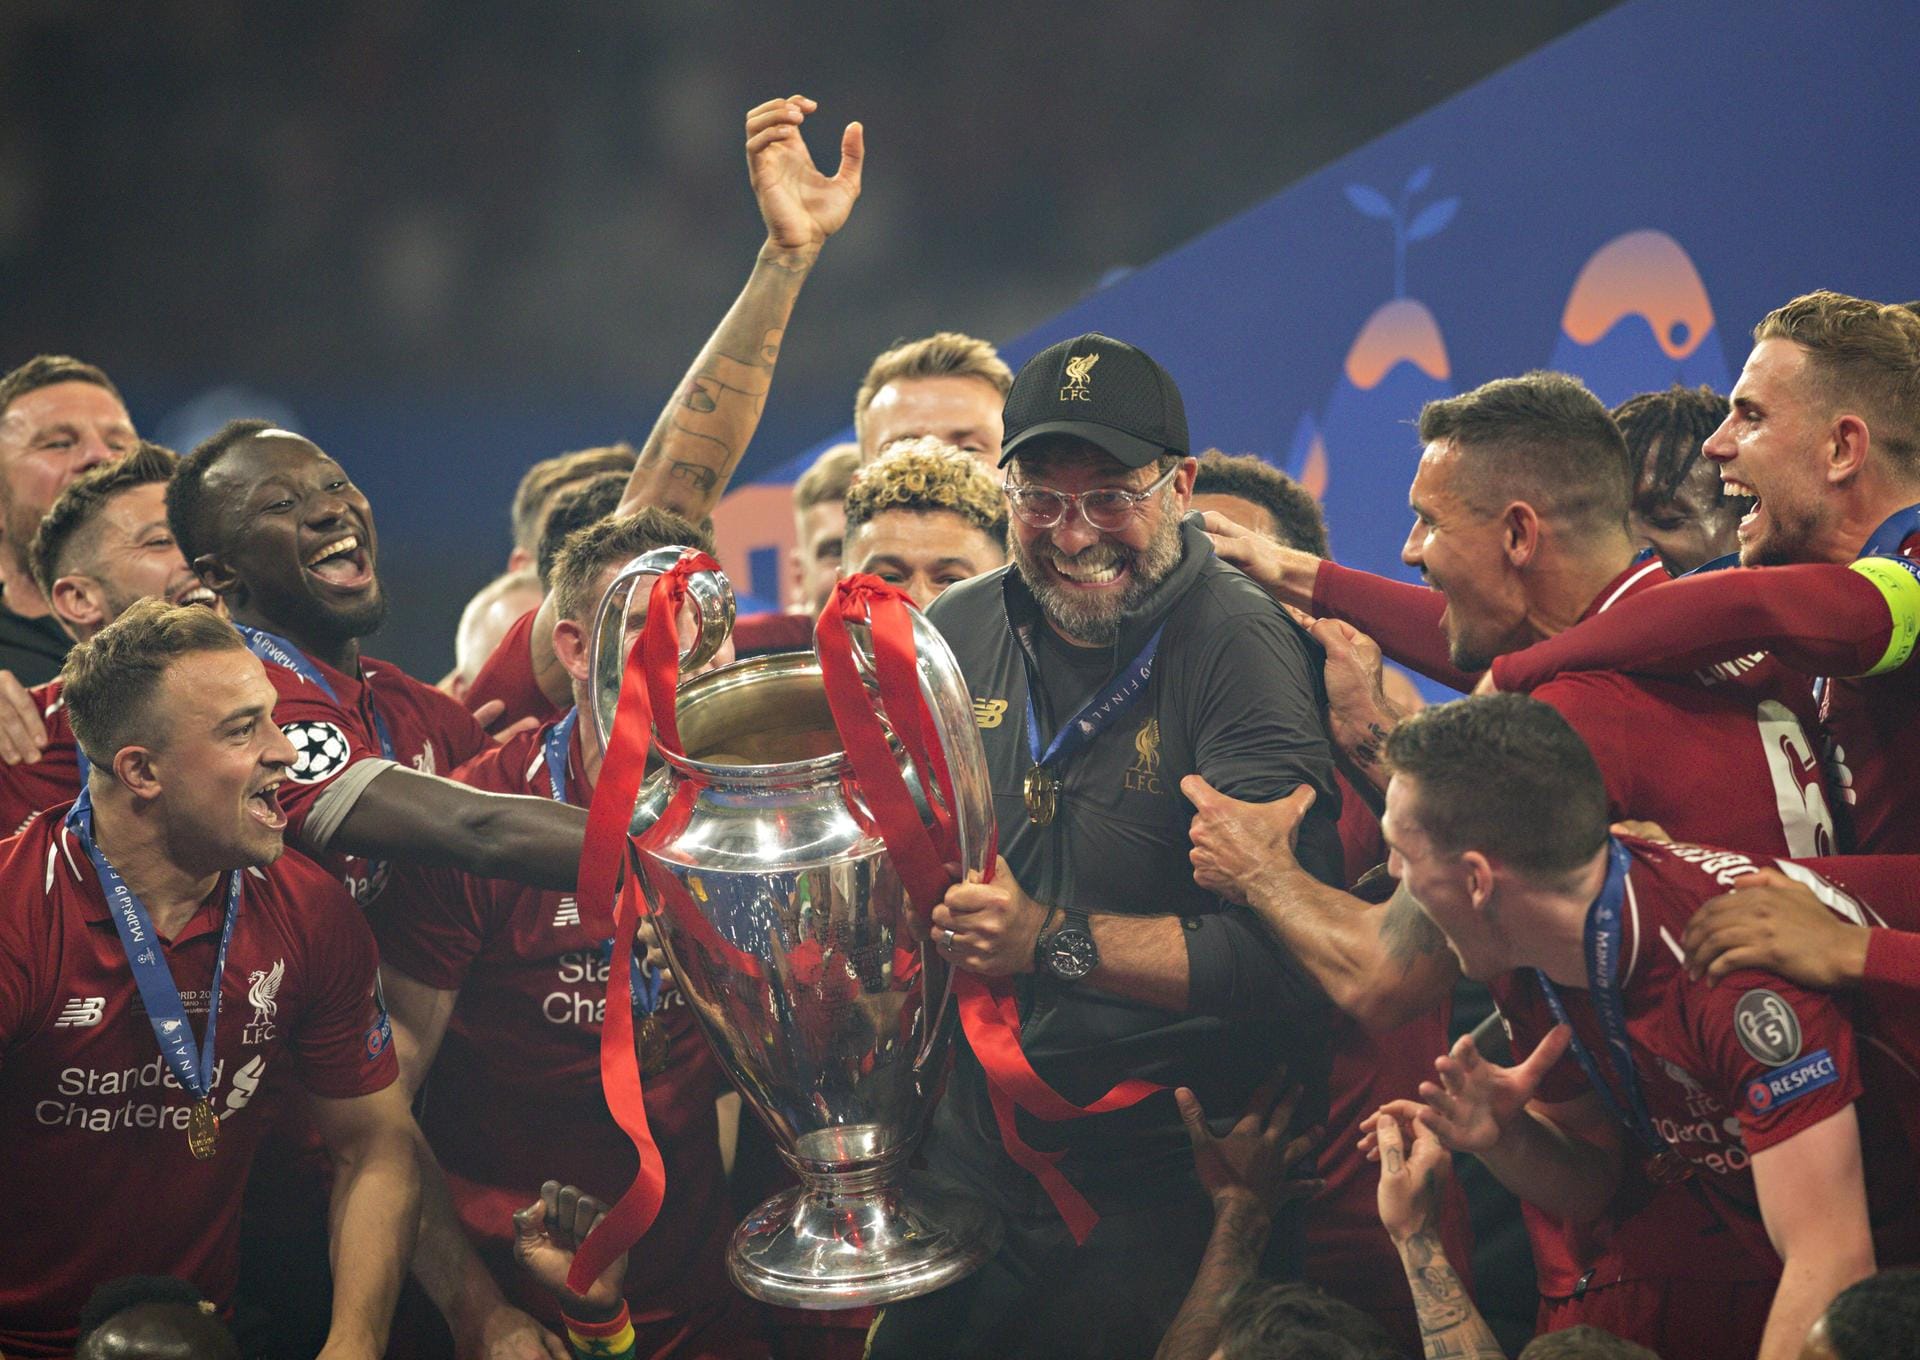 "L'équipe" (Frankreich): "Die roten Könige. Liverpool gewinnt ein enttäuschendes Finale."